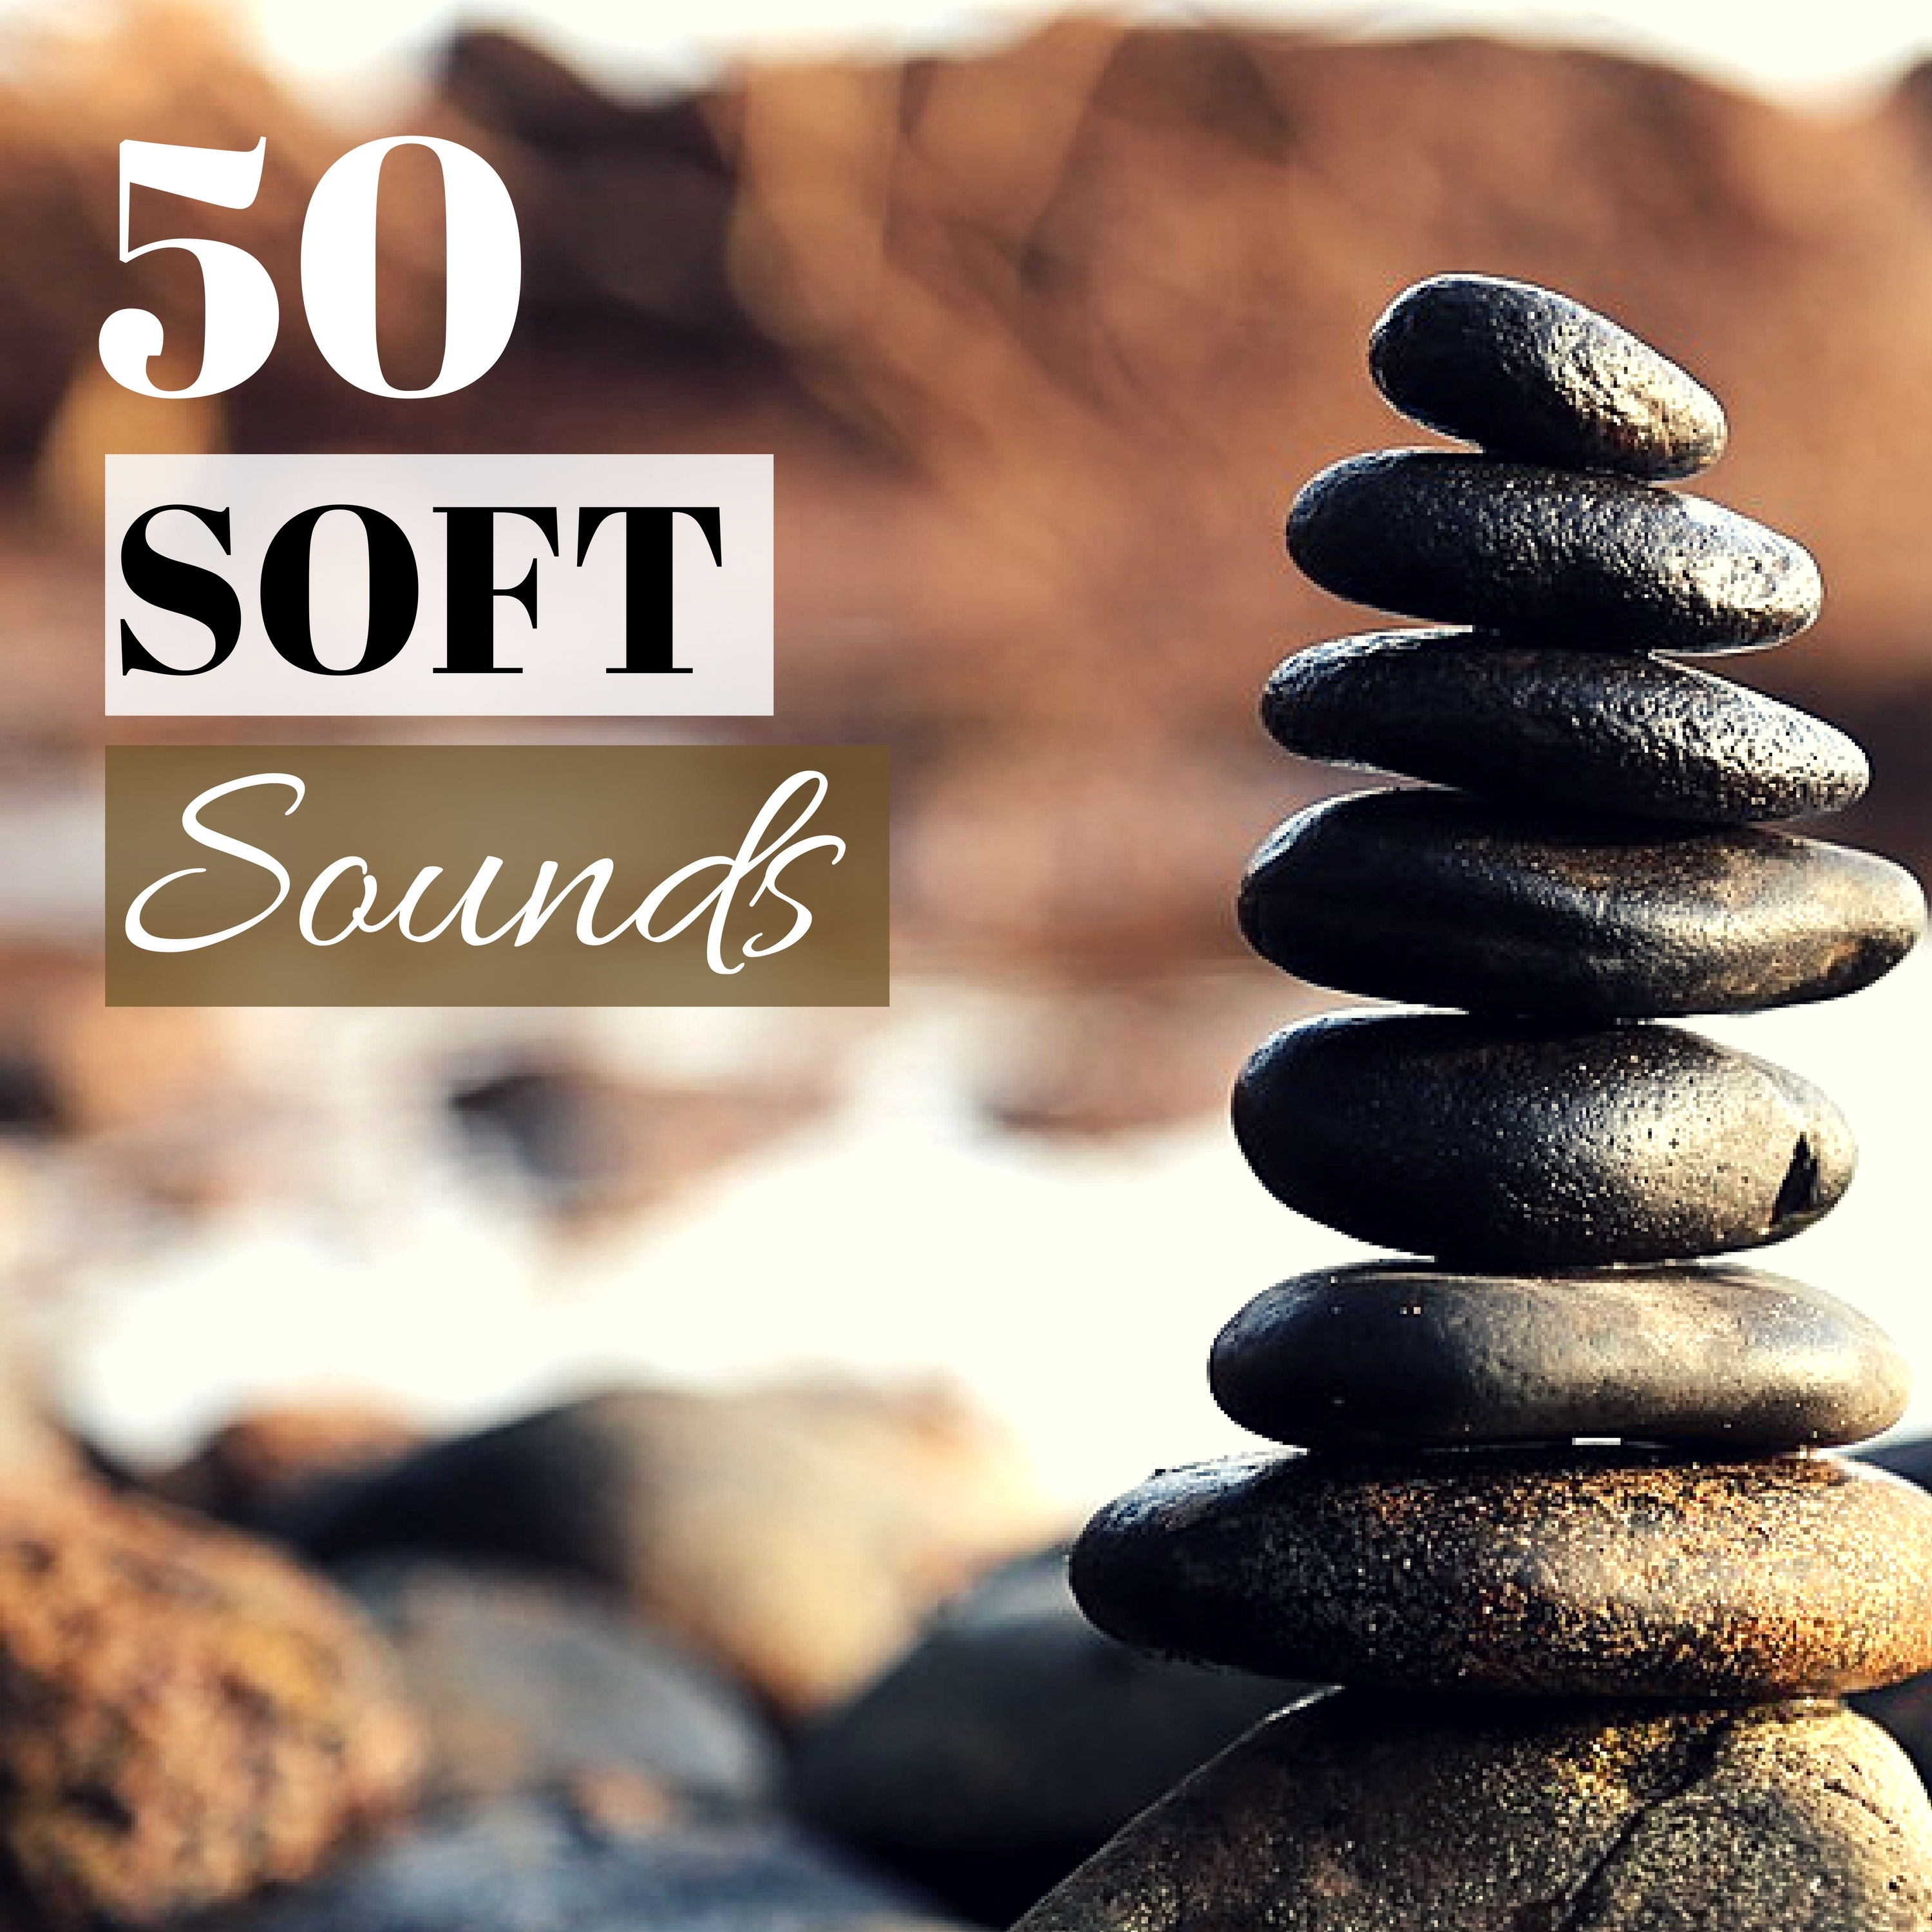 Soft Sounds